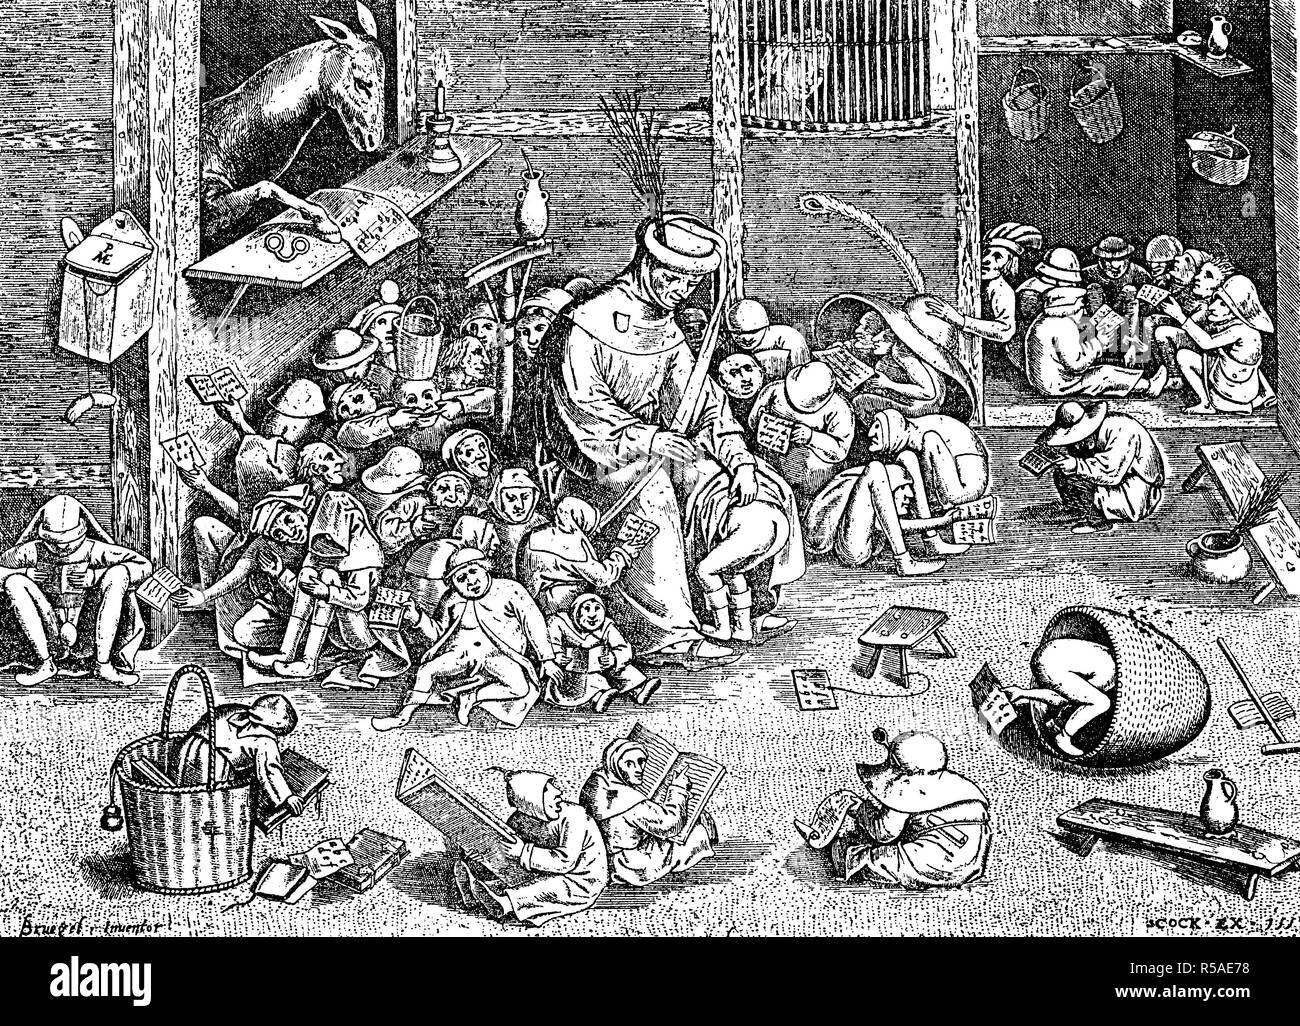 Représentation satirique d'une scène de l'école, 1557, gravure sur bois, Angleterre Banque D'Images